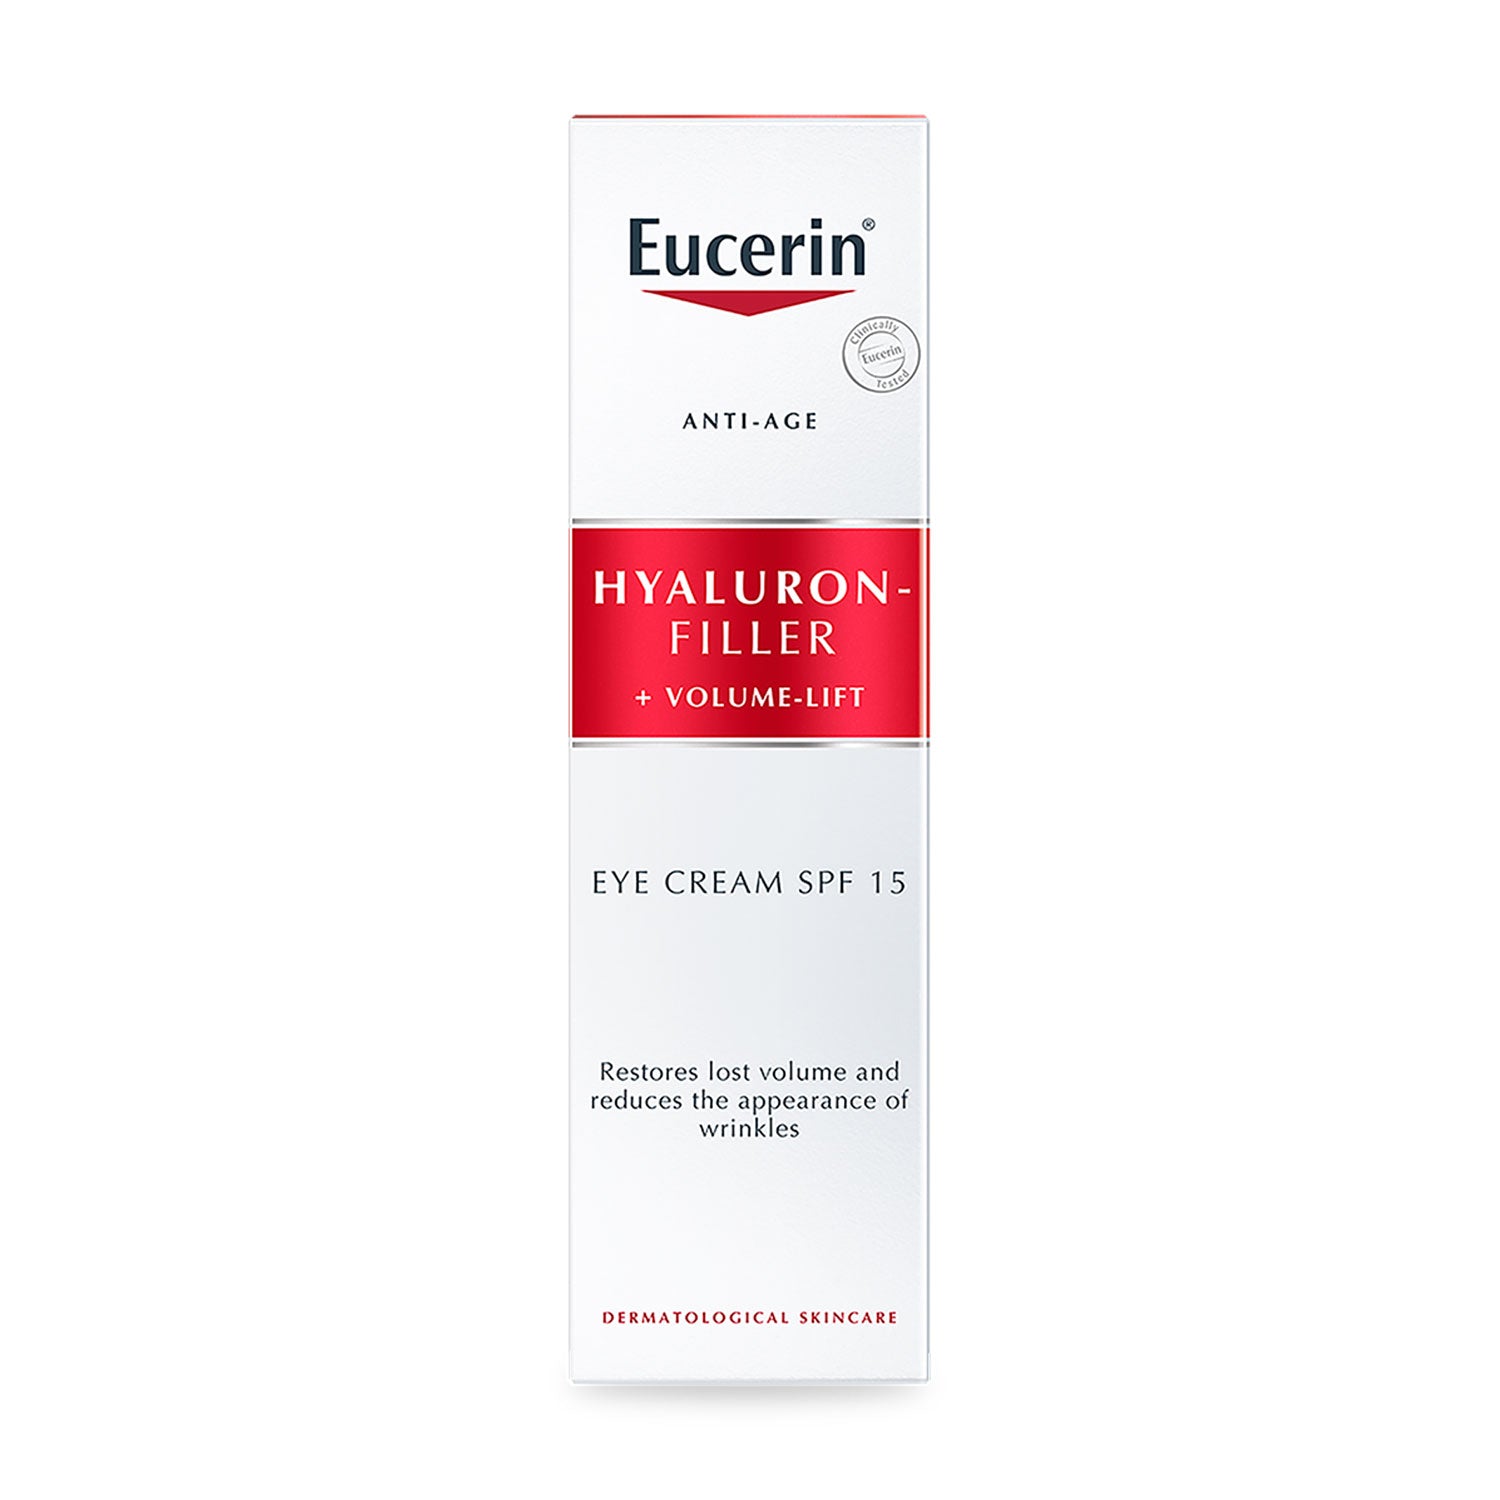 Eucerin Hyaluron-Filler Volume-Lift Eye Treatment Cream - 15ml